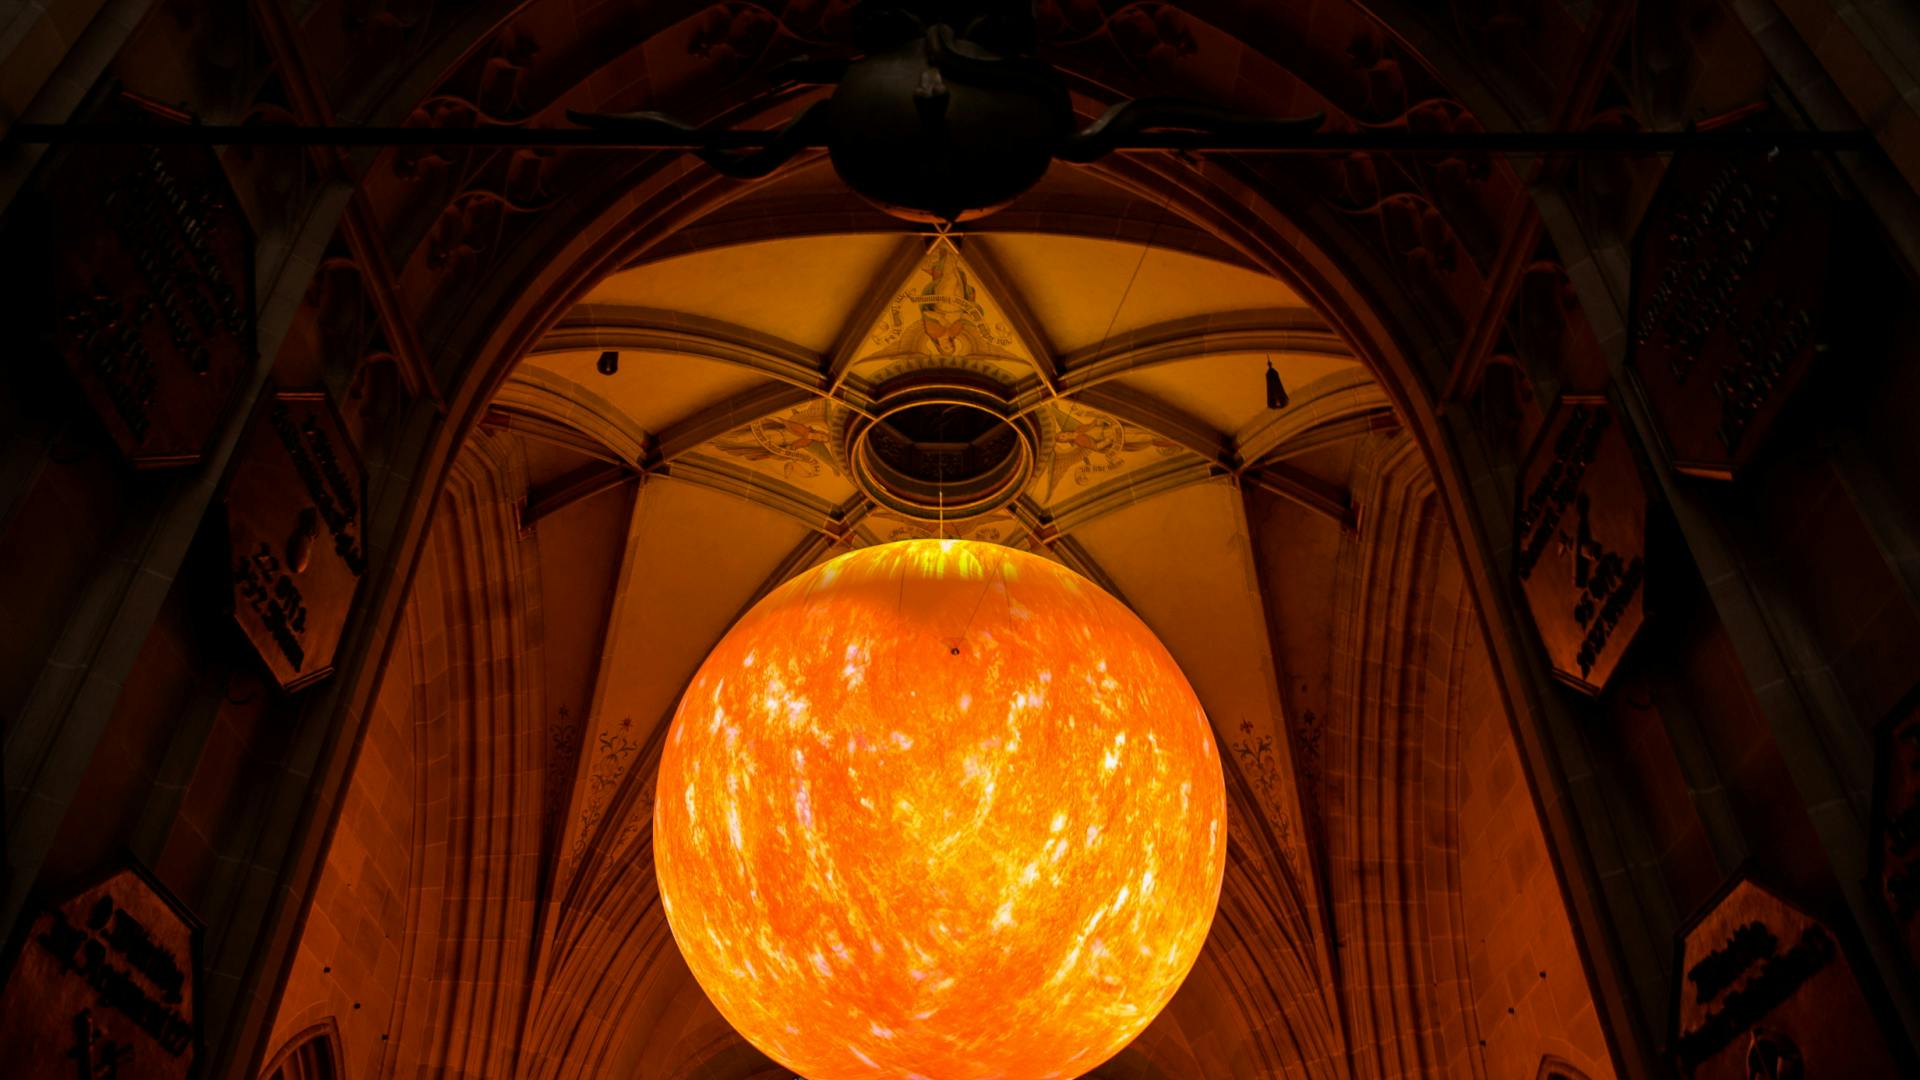 Im Ulmer Münster hängt und leuchtet die 200-millionenfach verkleinerte Imitation der Sonne "Solar Equation" der Sonne von Rafael Lozano-Hemmer